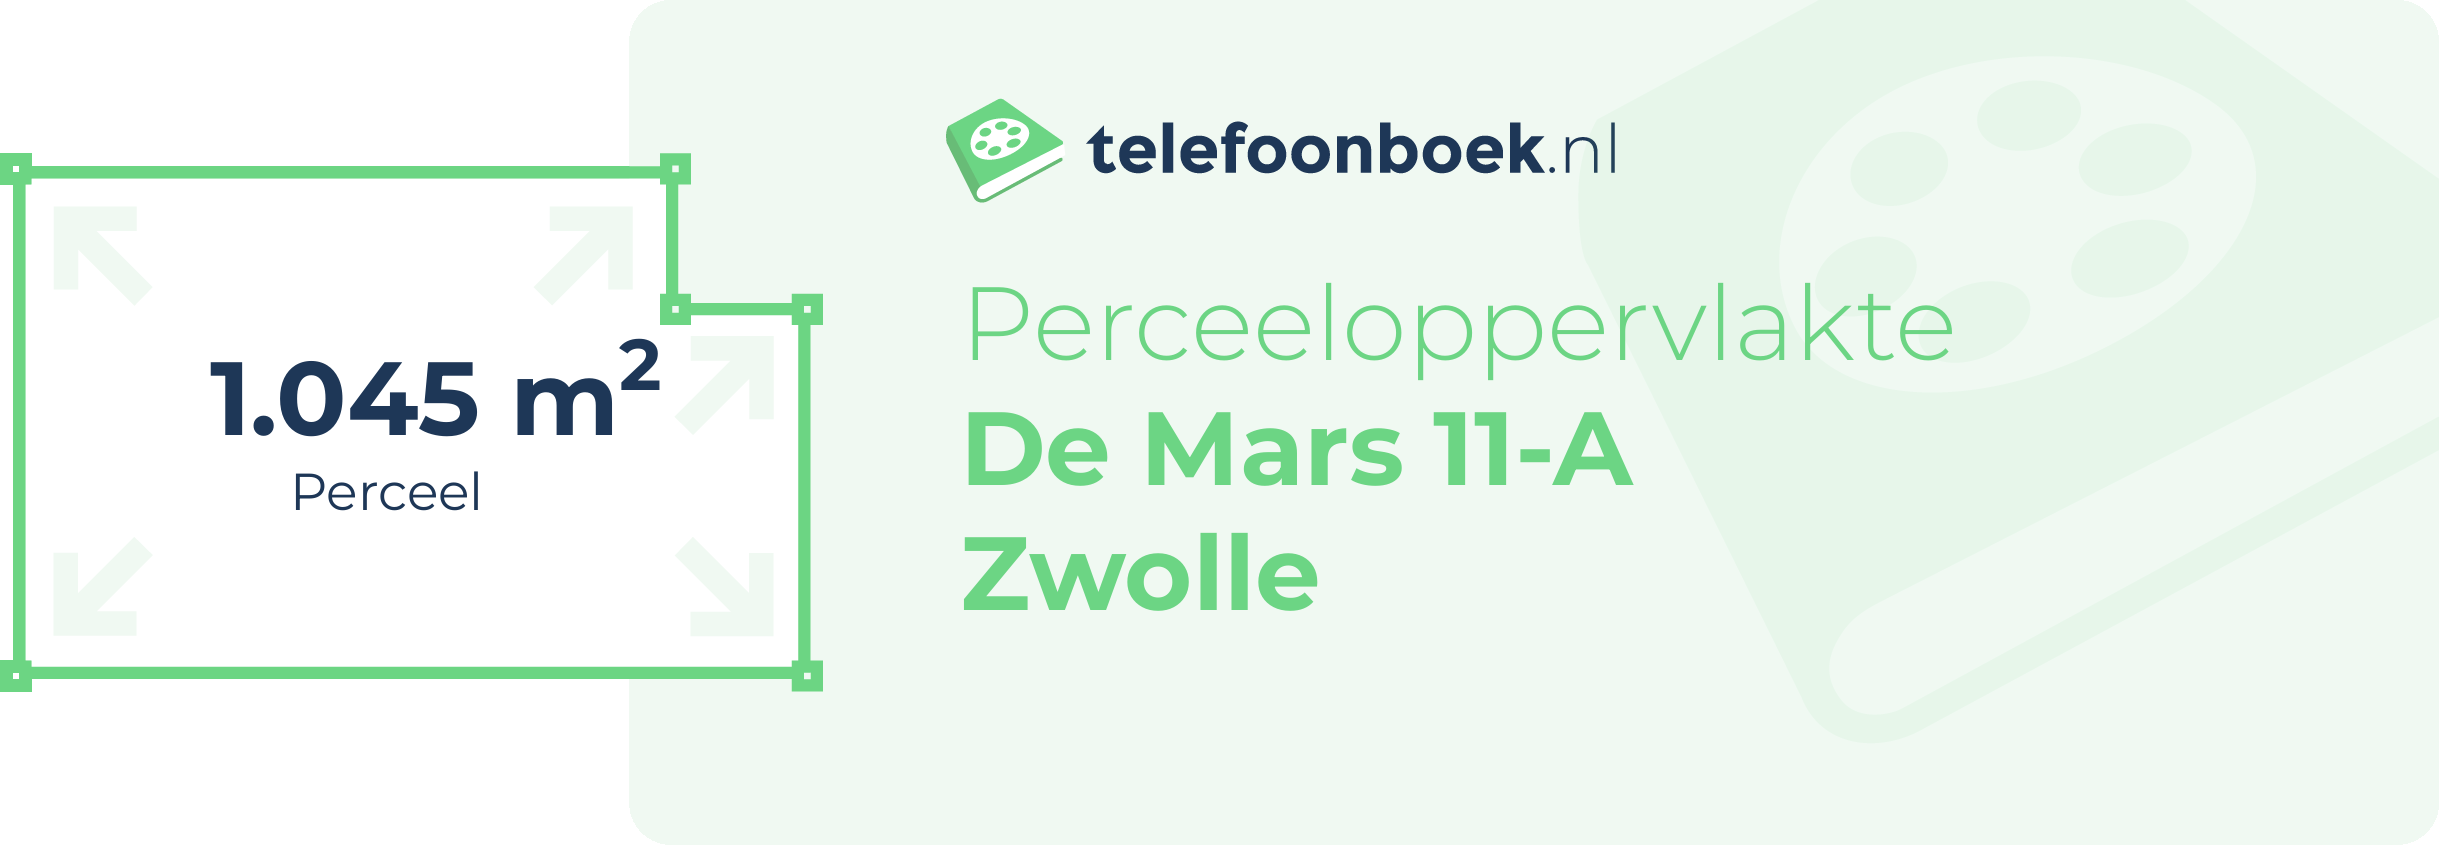 Perceeloppervlakte De Mars 11-A Zwolle